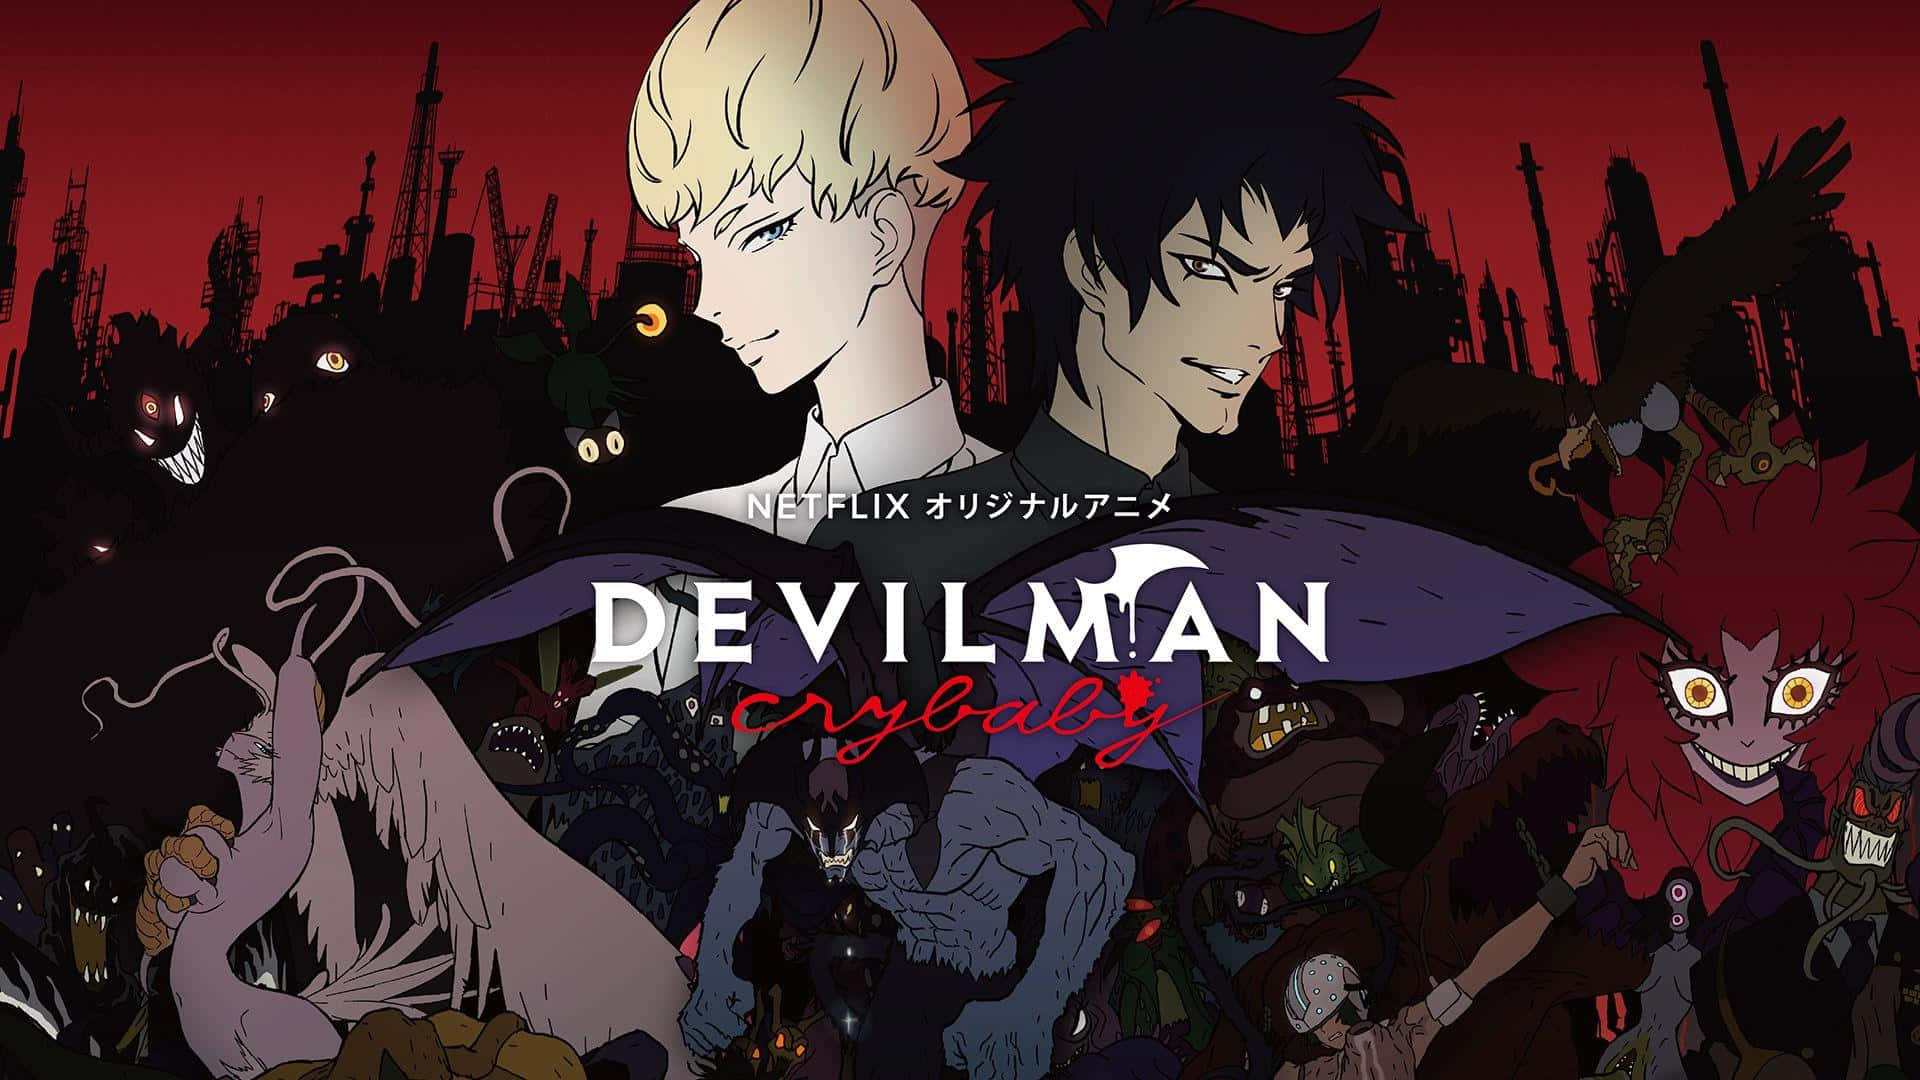 Akirafudo, Huvudpersonen I Den Populära Animeserien Devilman Crybaby, Är Redo Att Möta Sina Senaste Demoner.